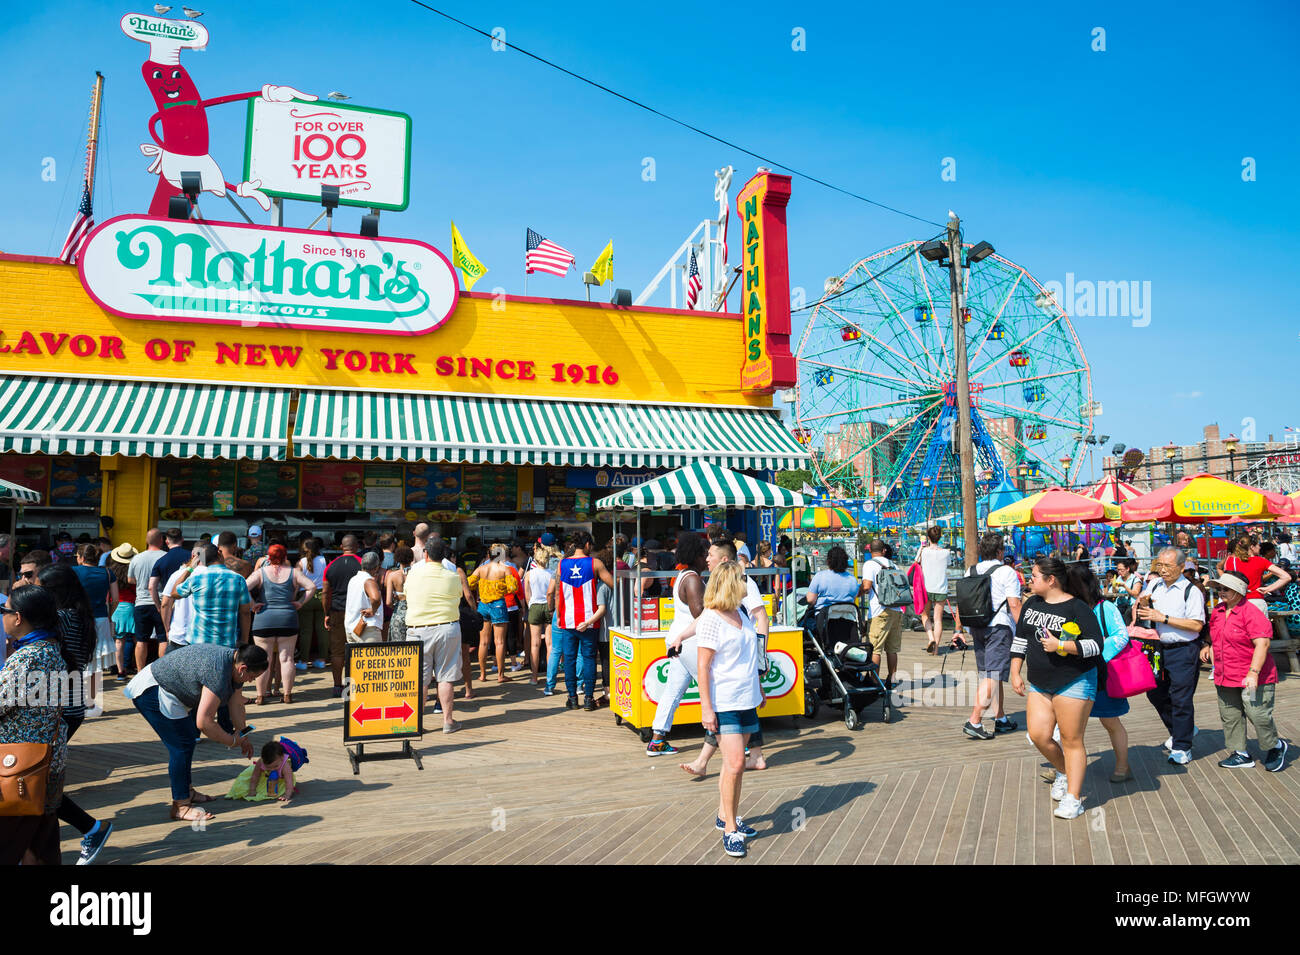 NEW YORK CITY - 20. AUGUST 2017: Besucher gehen die ikonischen Holz- Coney Island boardwalk außerhalb Hot Dog stand die berühmte Nathan an einem heißen Sommertag Stockfoto